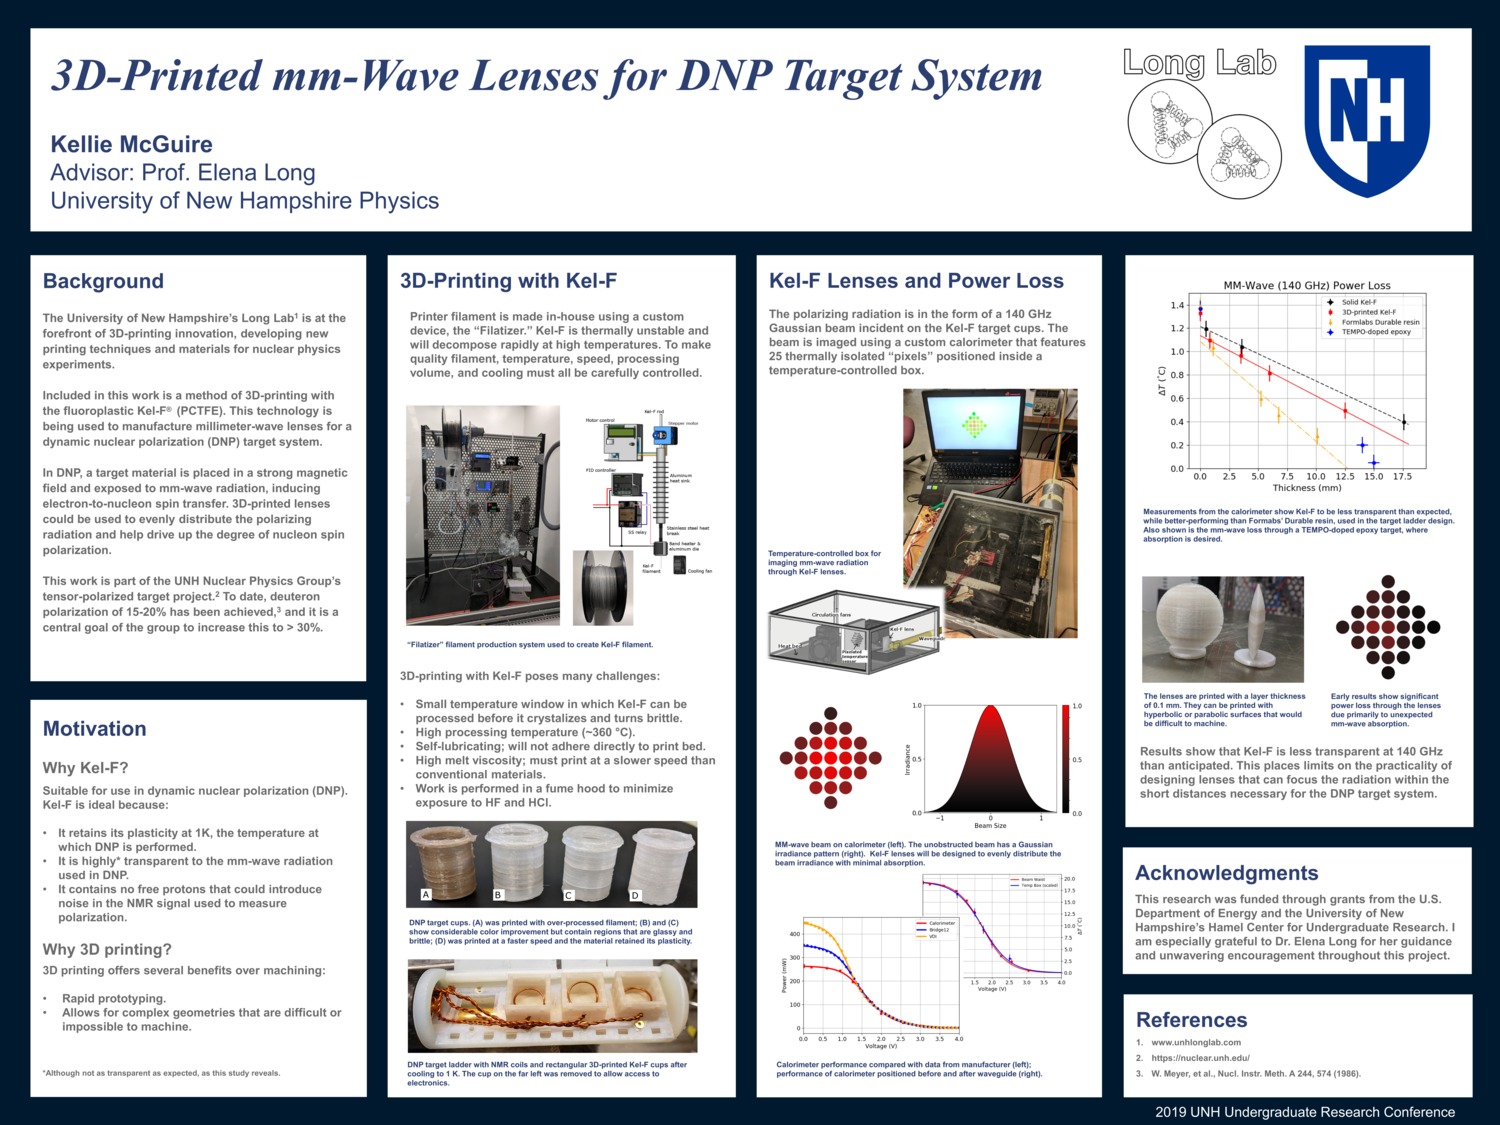 3d-Printed Mm-Wave Lenses For Dnp Target System by kjm1042